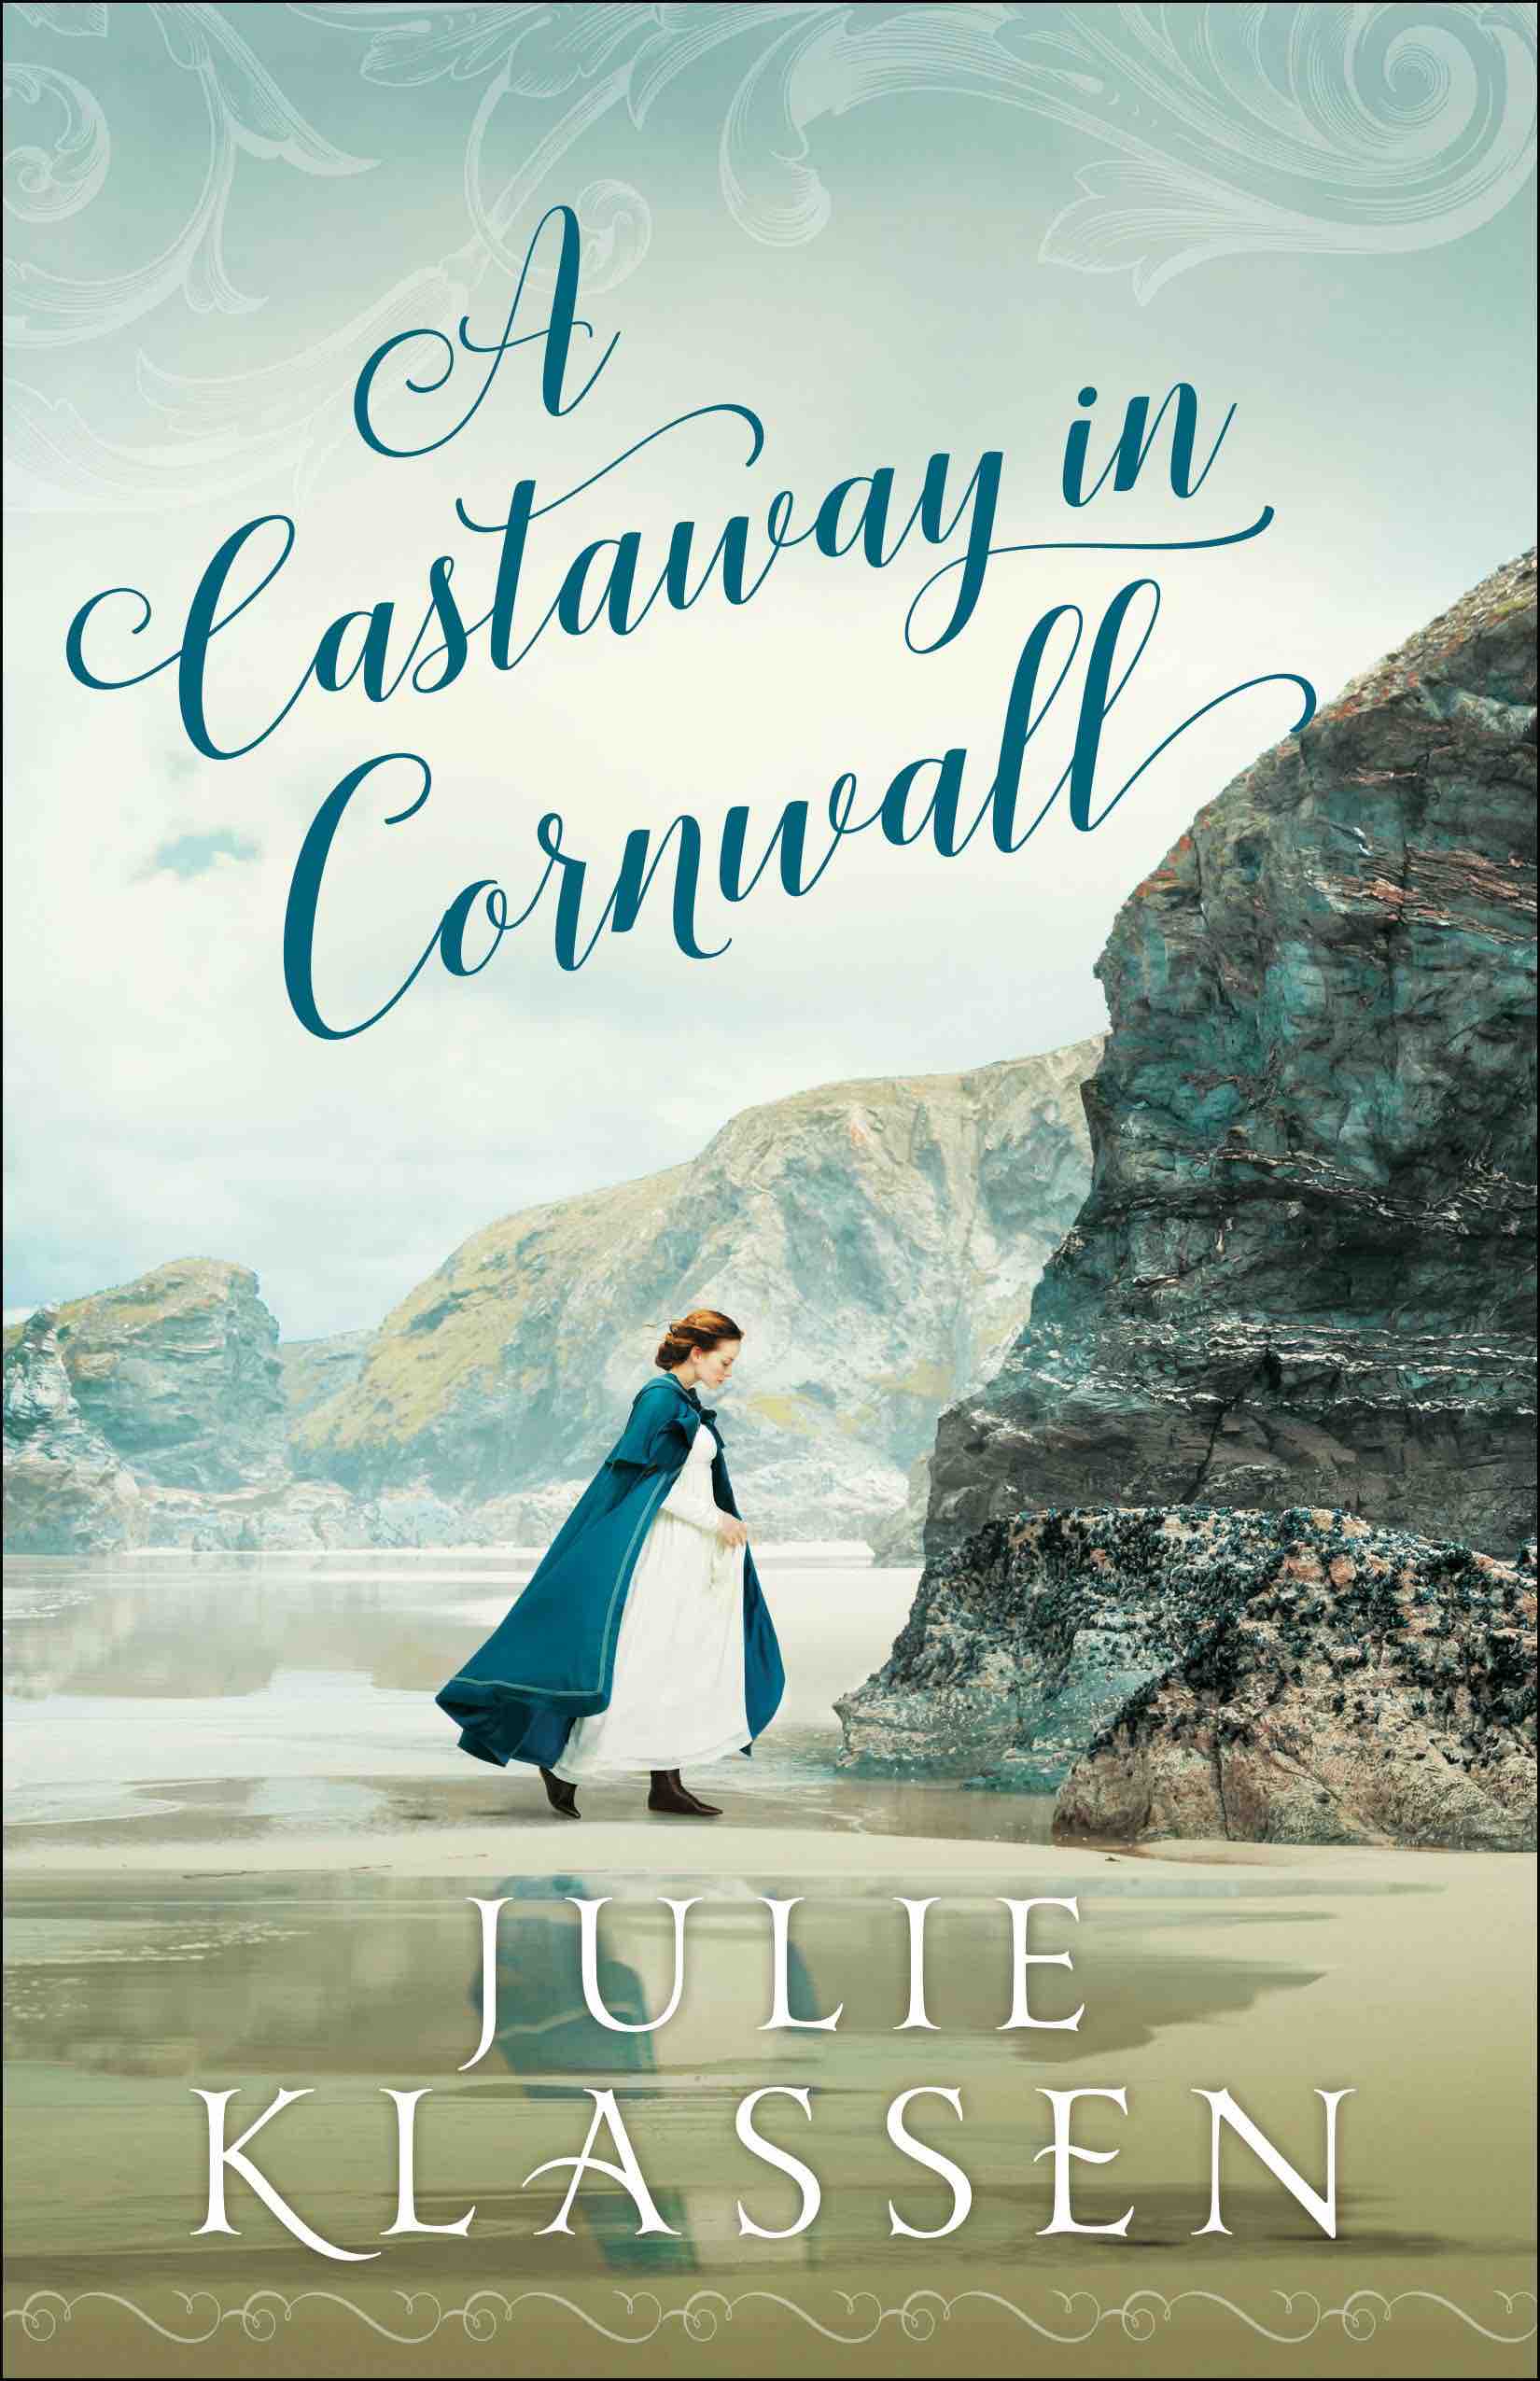 A Castaway in Cornwall by Julie Klassen 2020